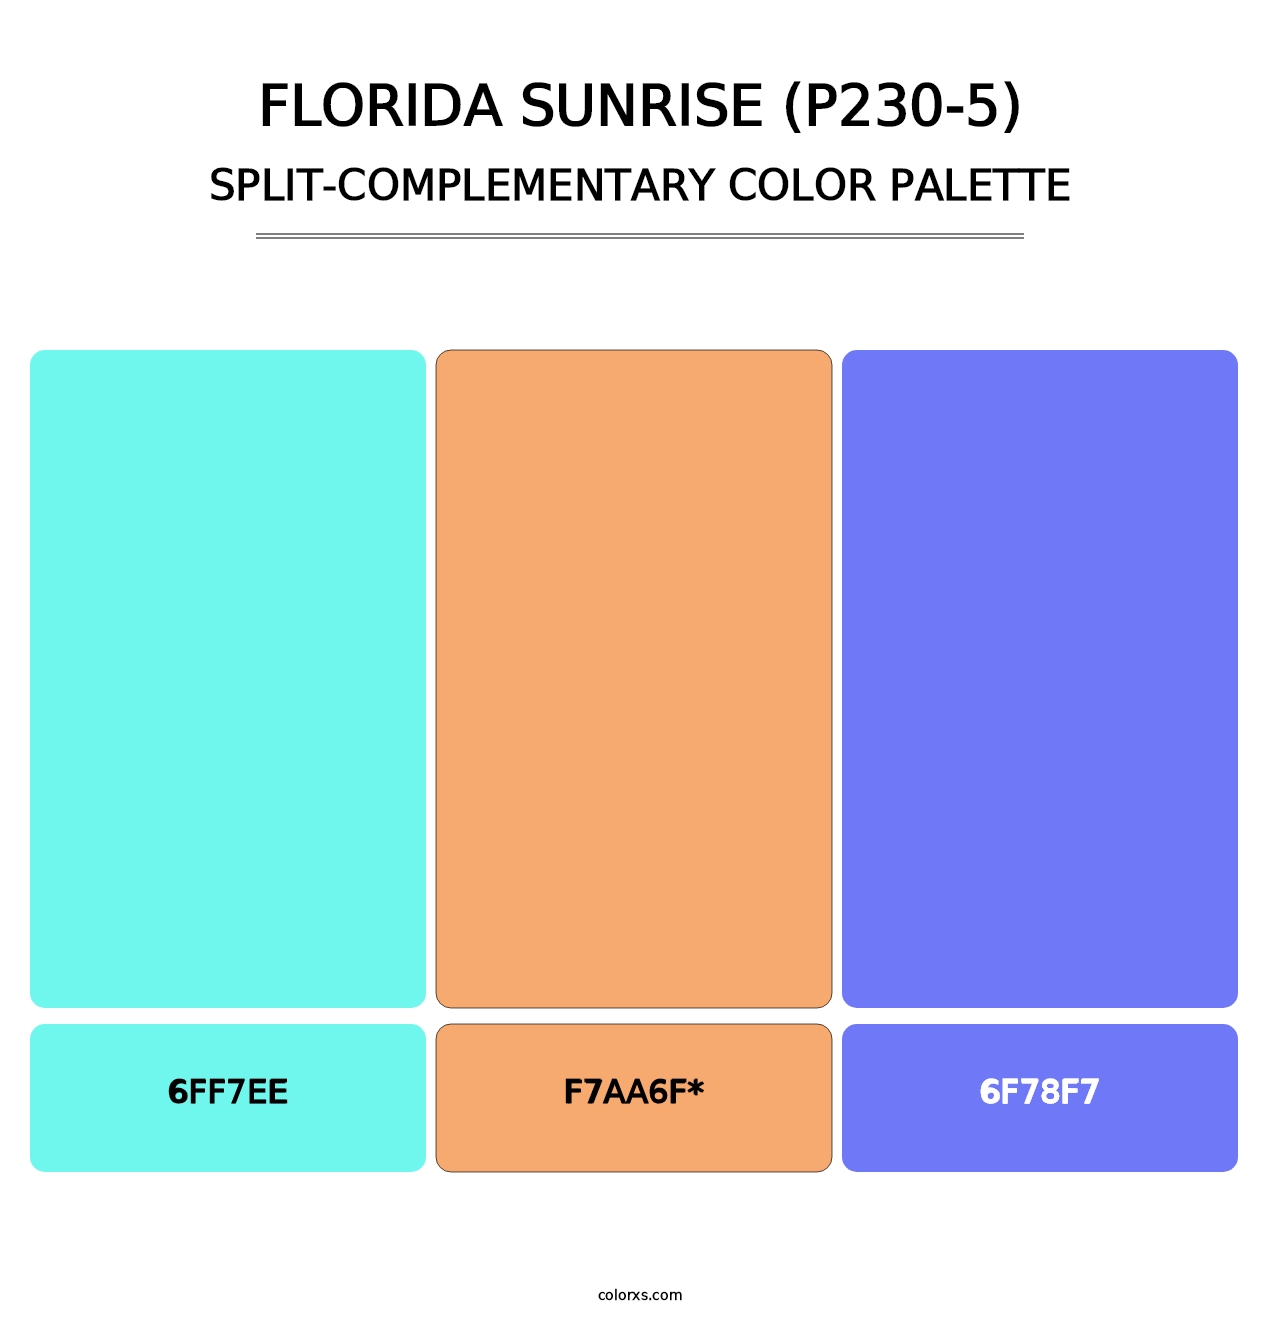 Florida Sunrise (P230-5) - Split-Complementary Color Palette